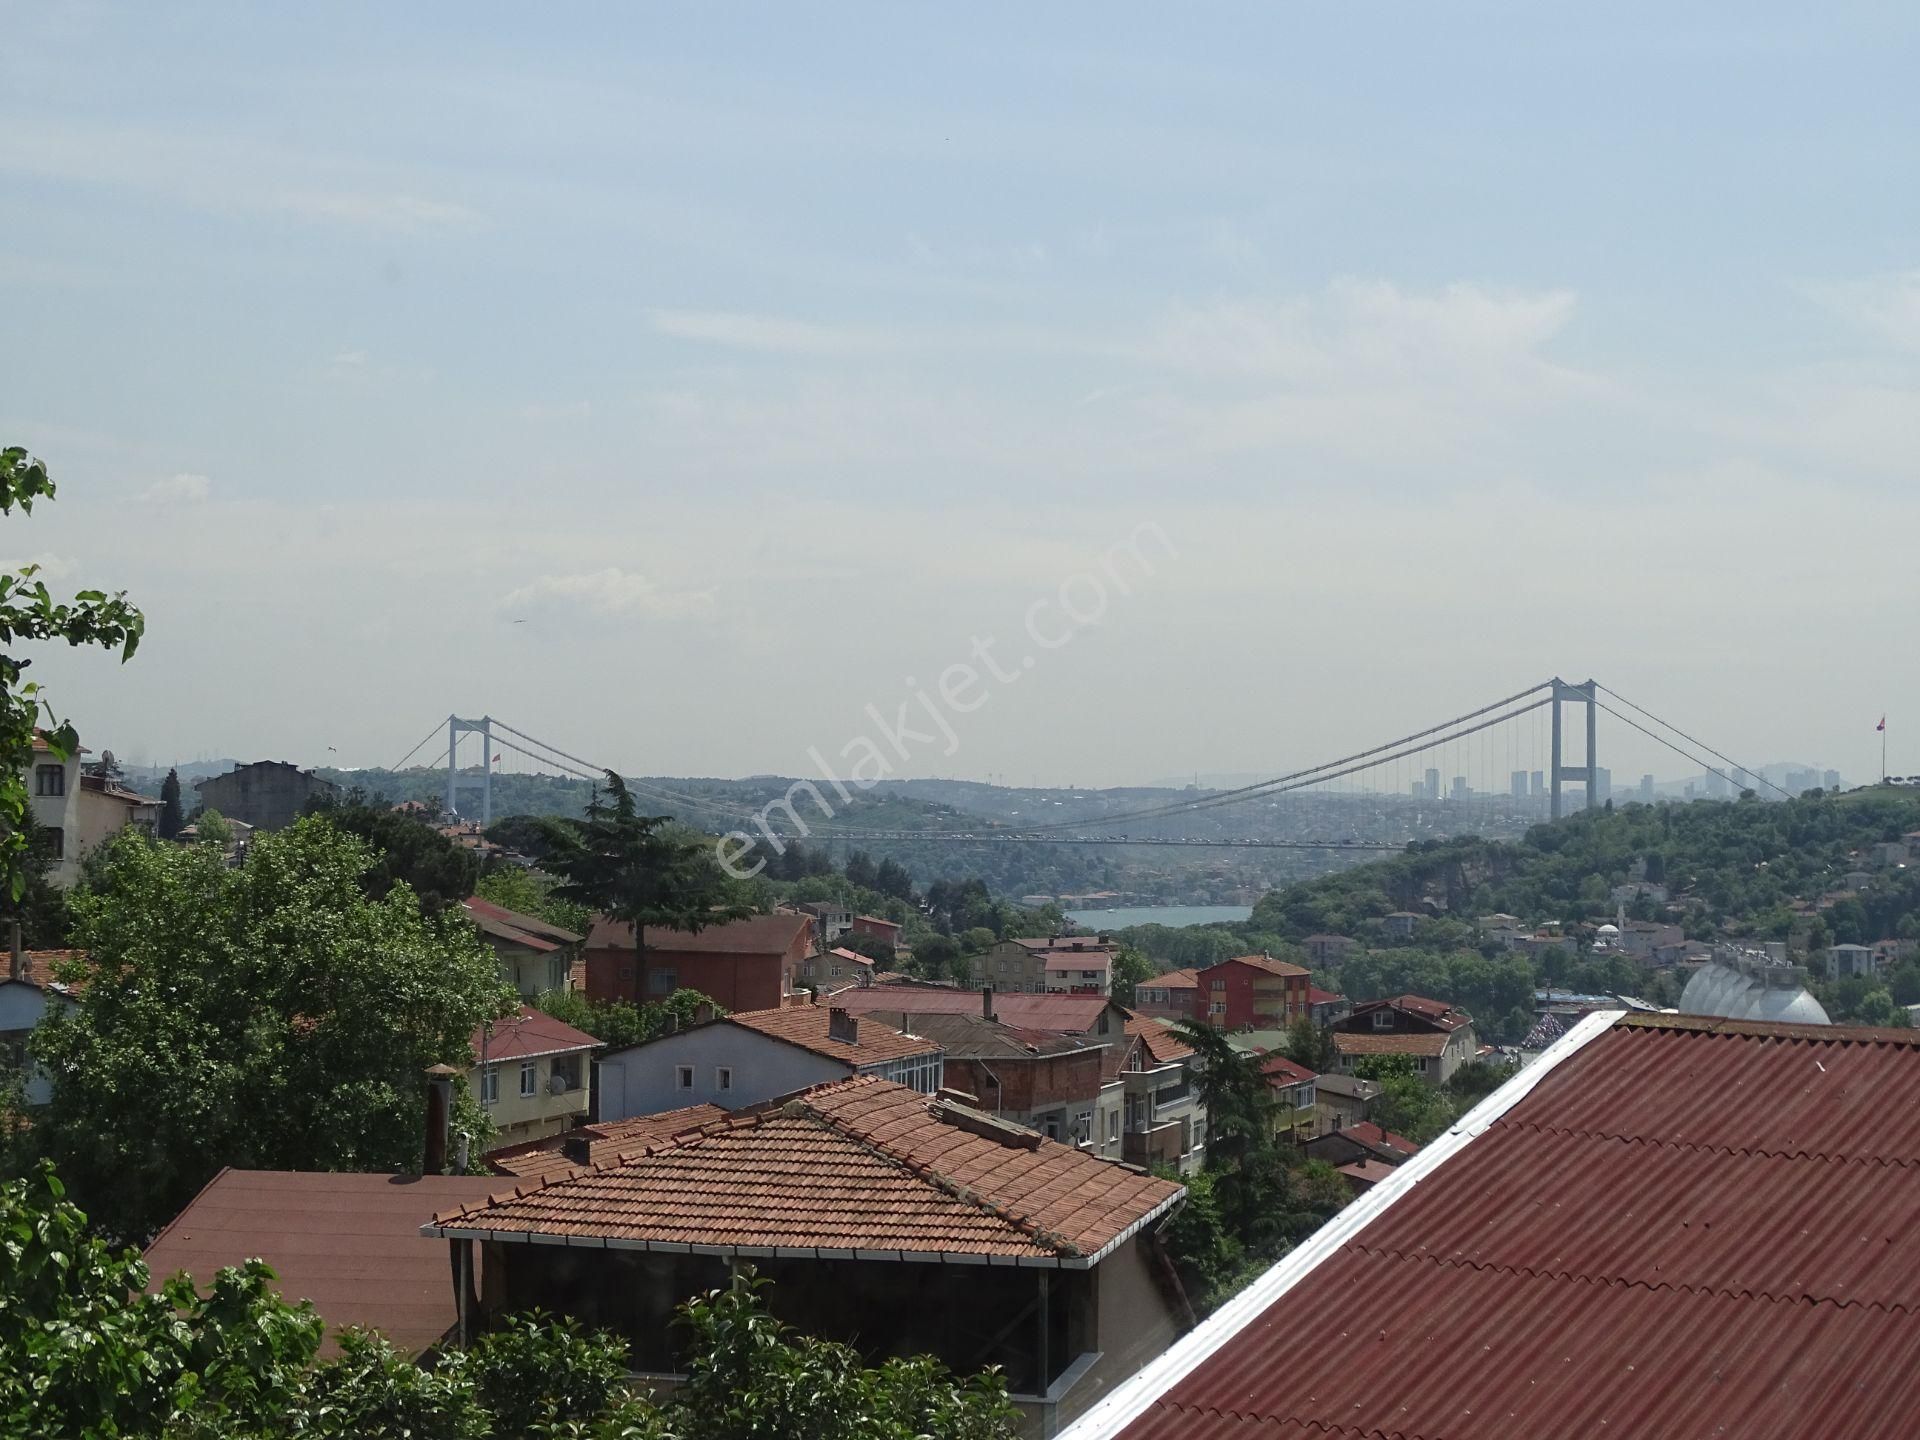 Sarıyer Reşitpaşa Kiralık Daire İstinye Parka Enka'ya Borsa İstanbul'a yakın manzaralı 2+1 daire